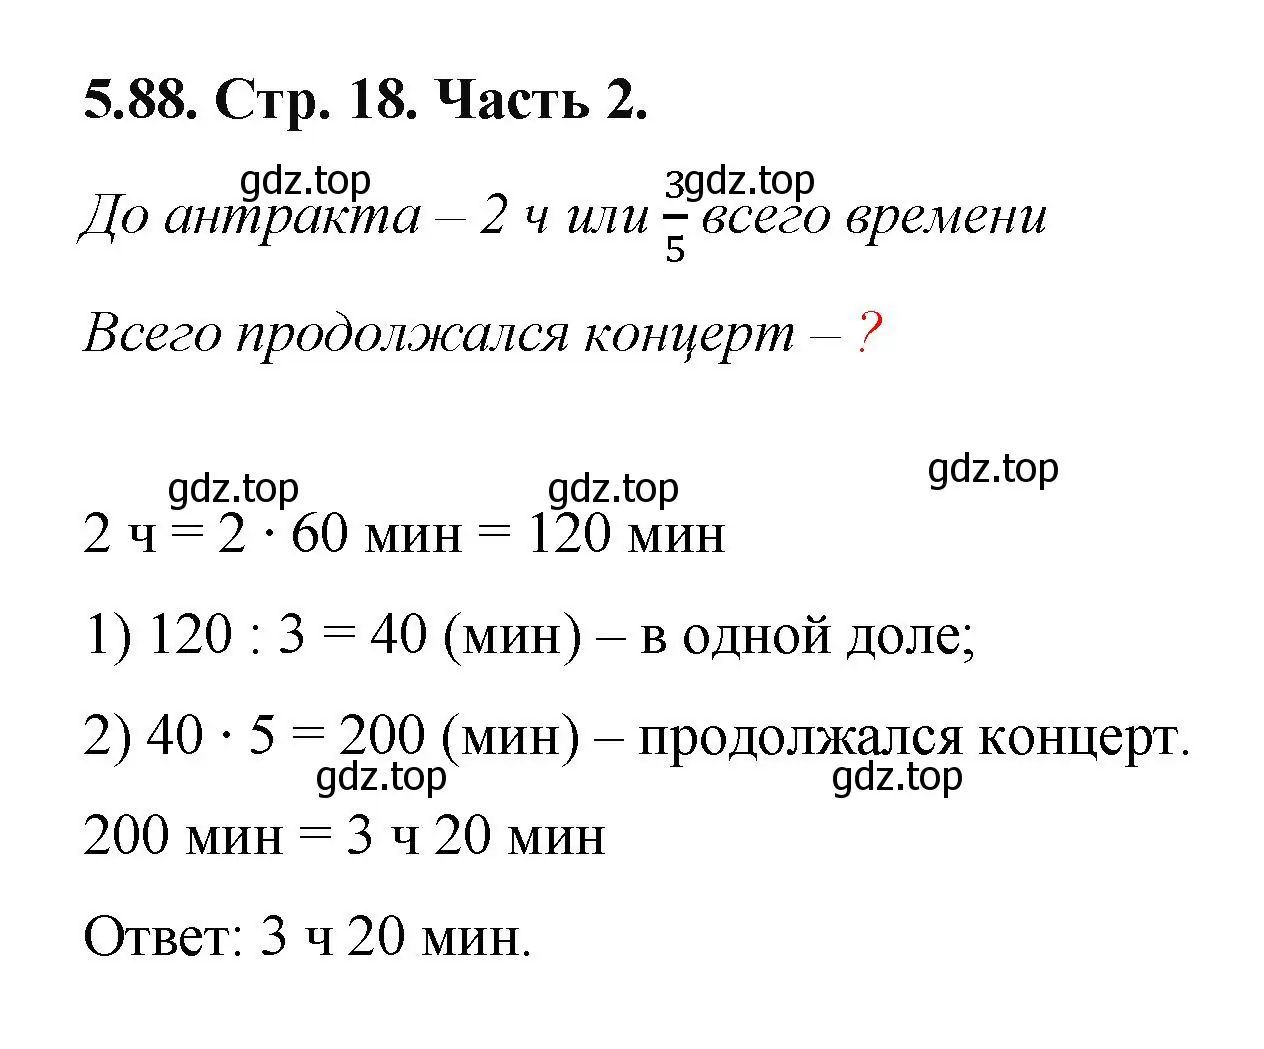 Решение номер 5.88 (страница 18) гдз по математике 5 класс Виленкин, Жохов, учебник 2 часть